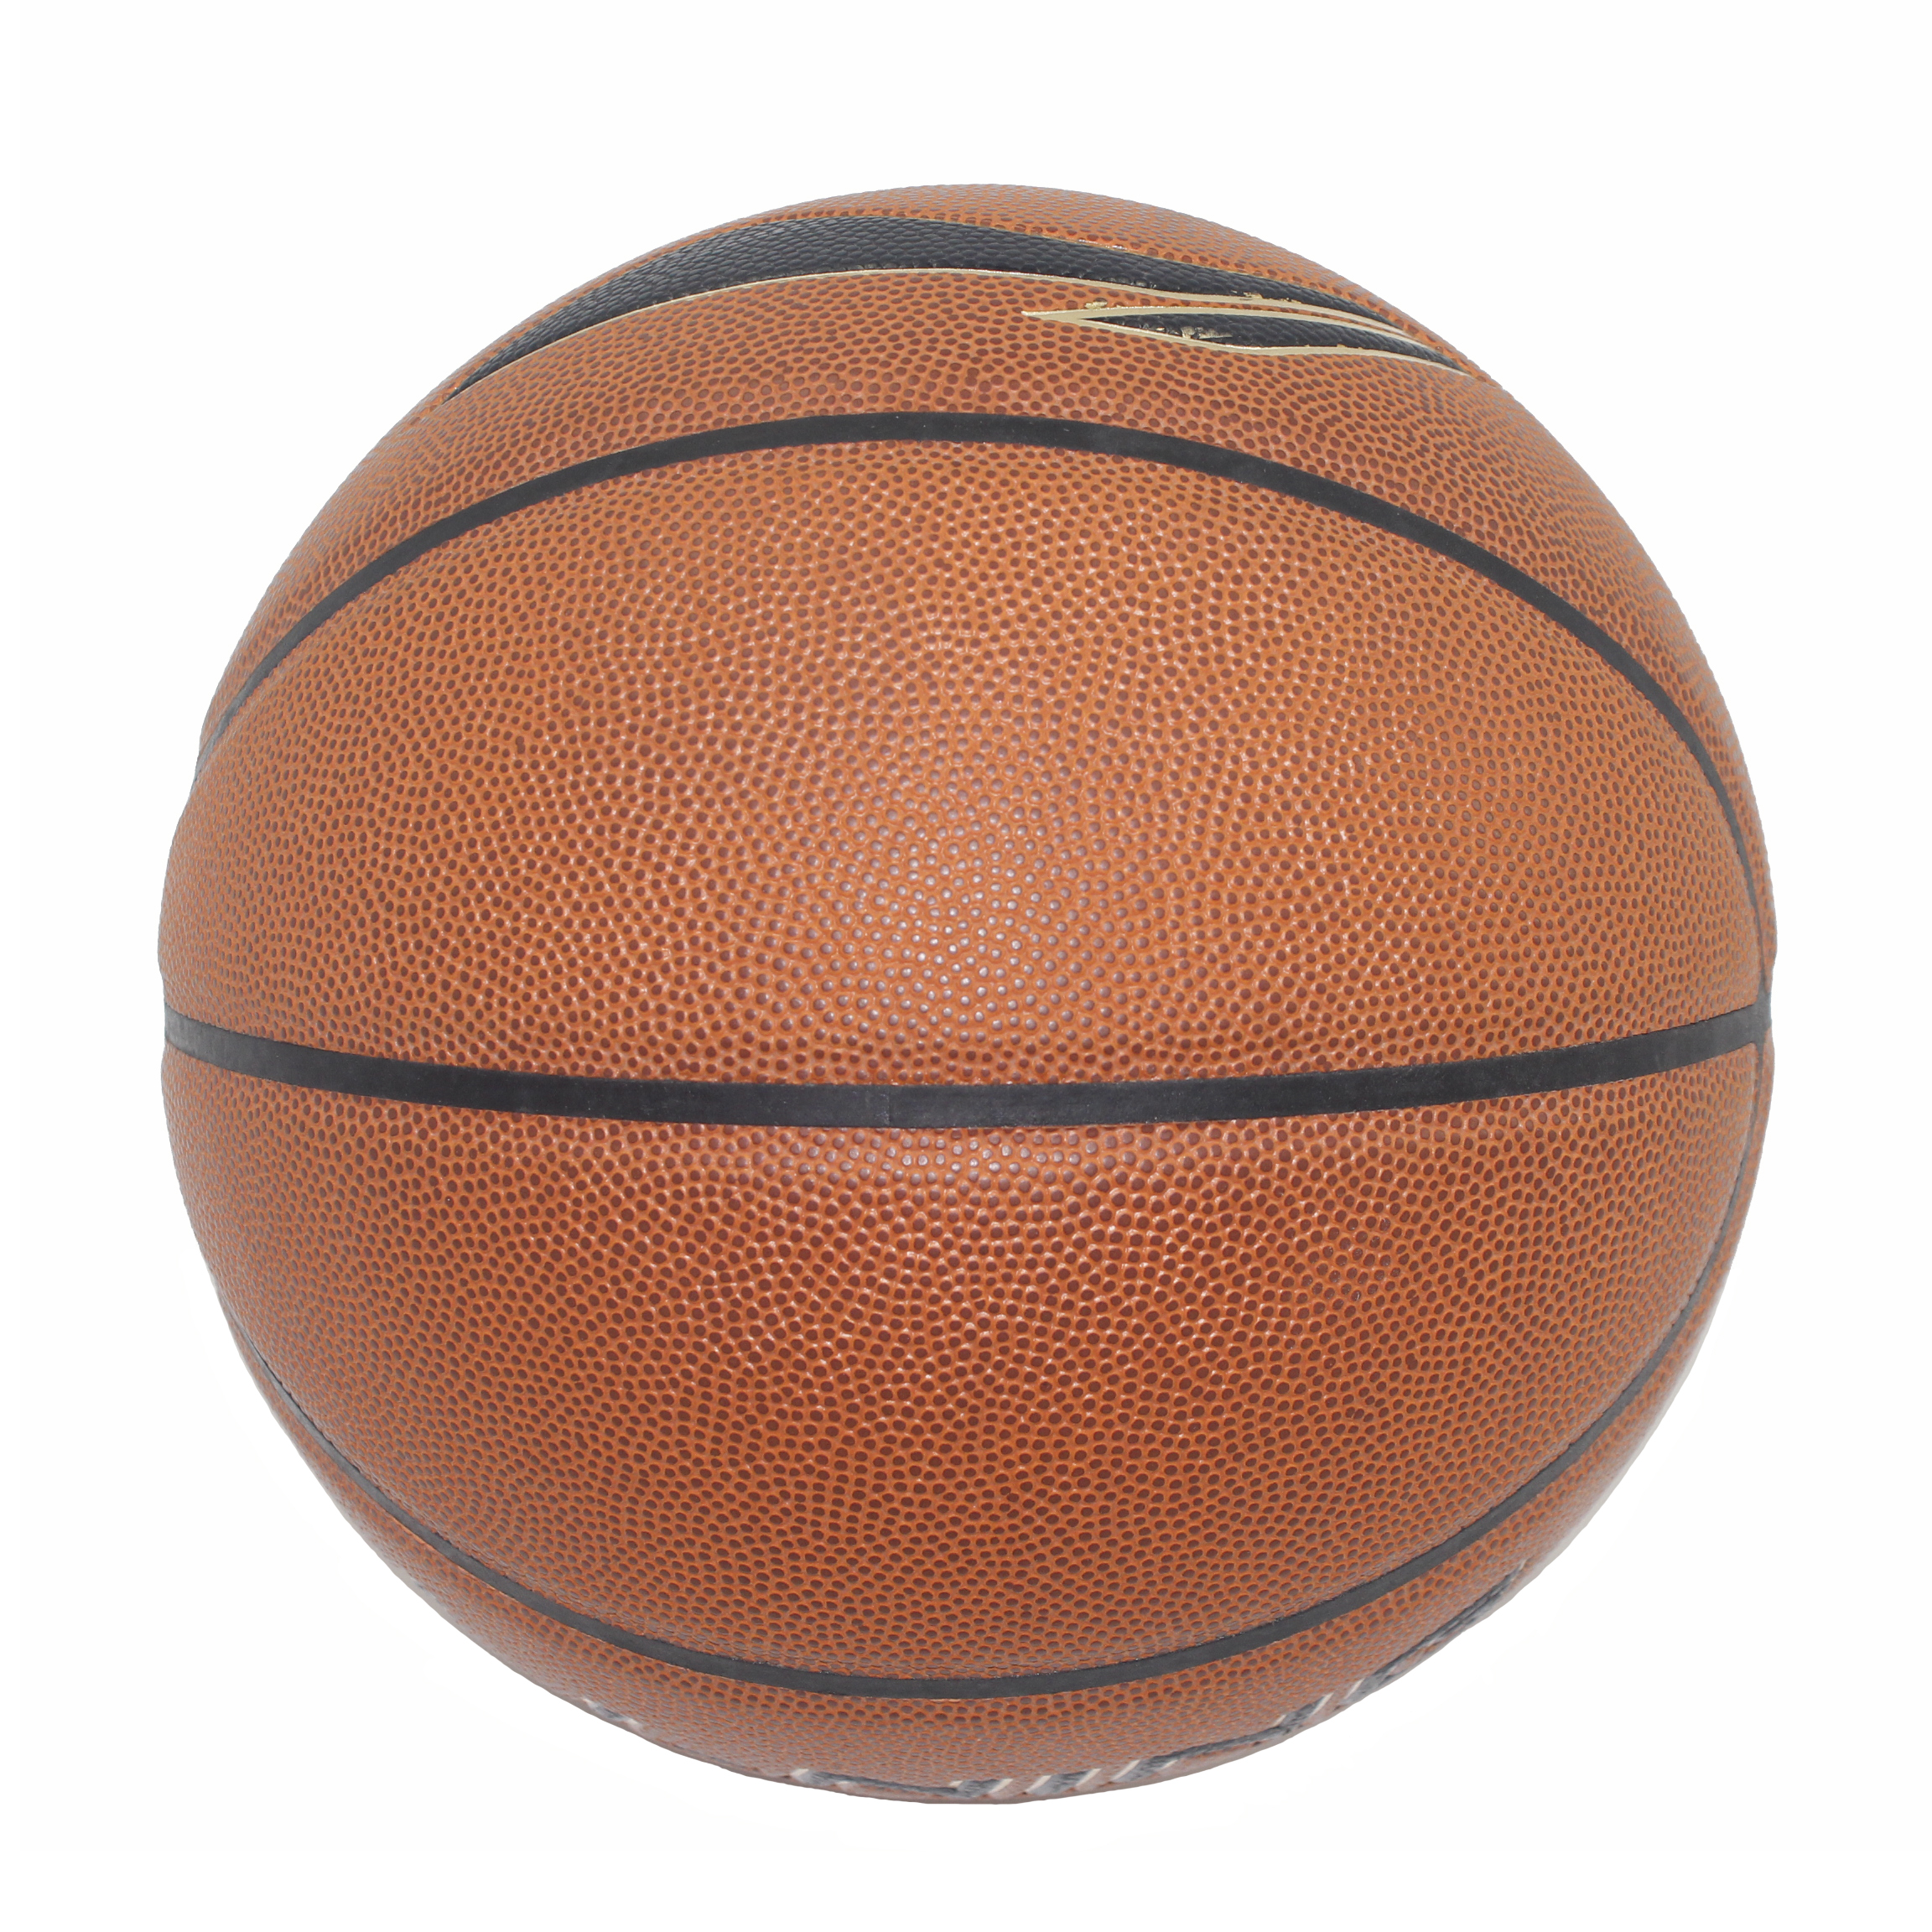 Hochwertiger Outdoor-Basketball aus Gummi, Leder und PU-Haut, Größe 5, 6, 7